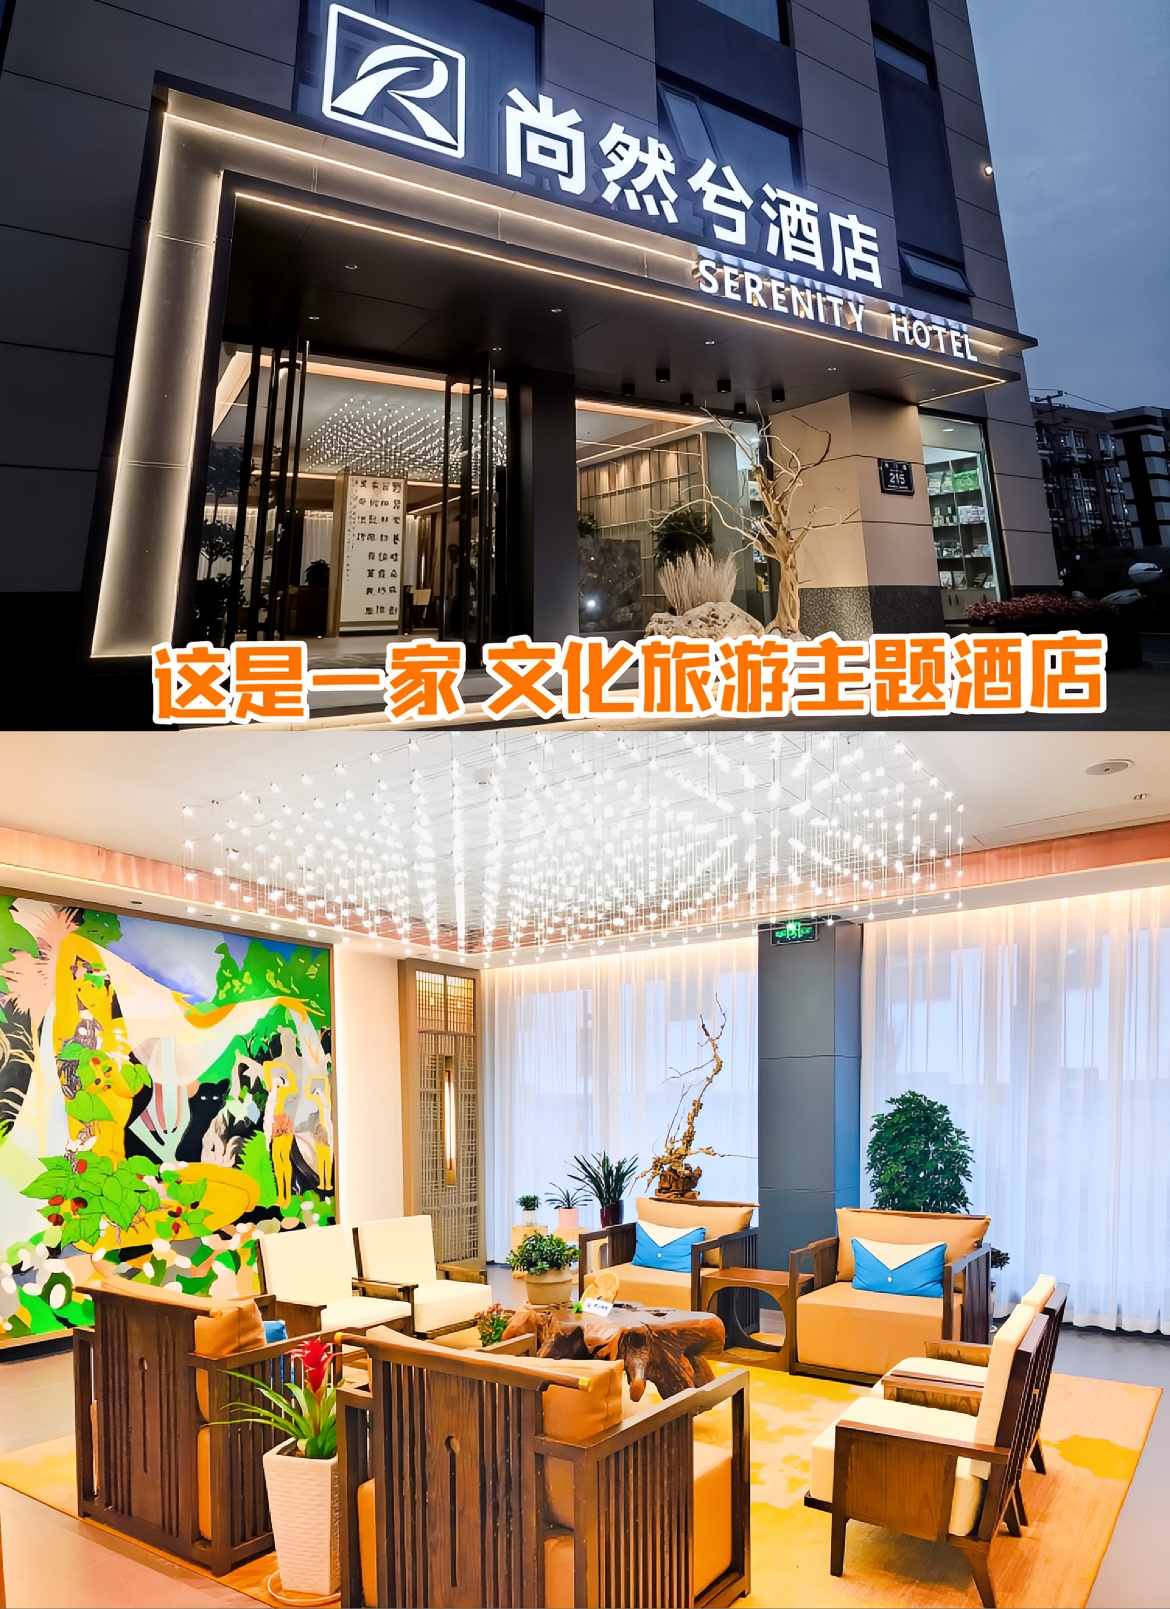 酒店位于嫘祖故里远安县城主干道南门路215号，地理位置十分优越，步行至客运站和中心商业区仅需5分钟，